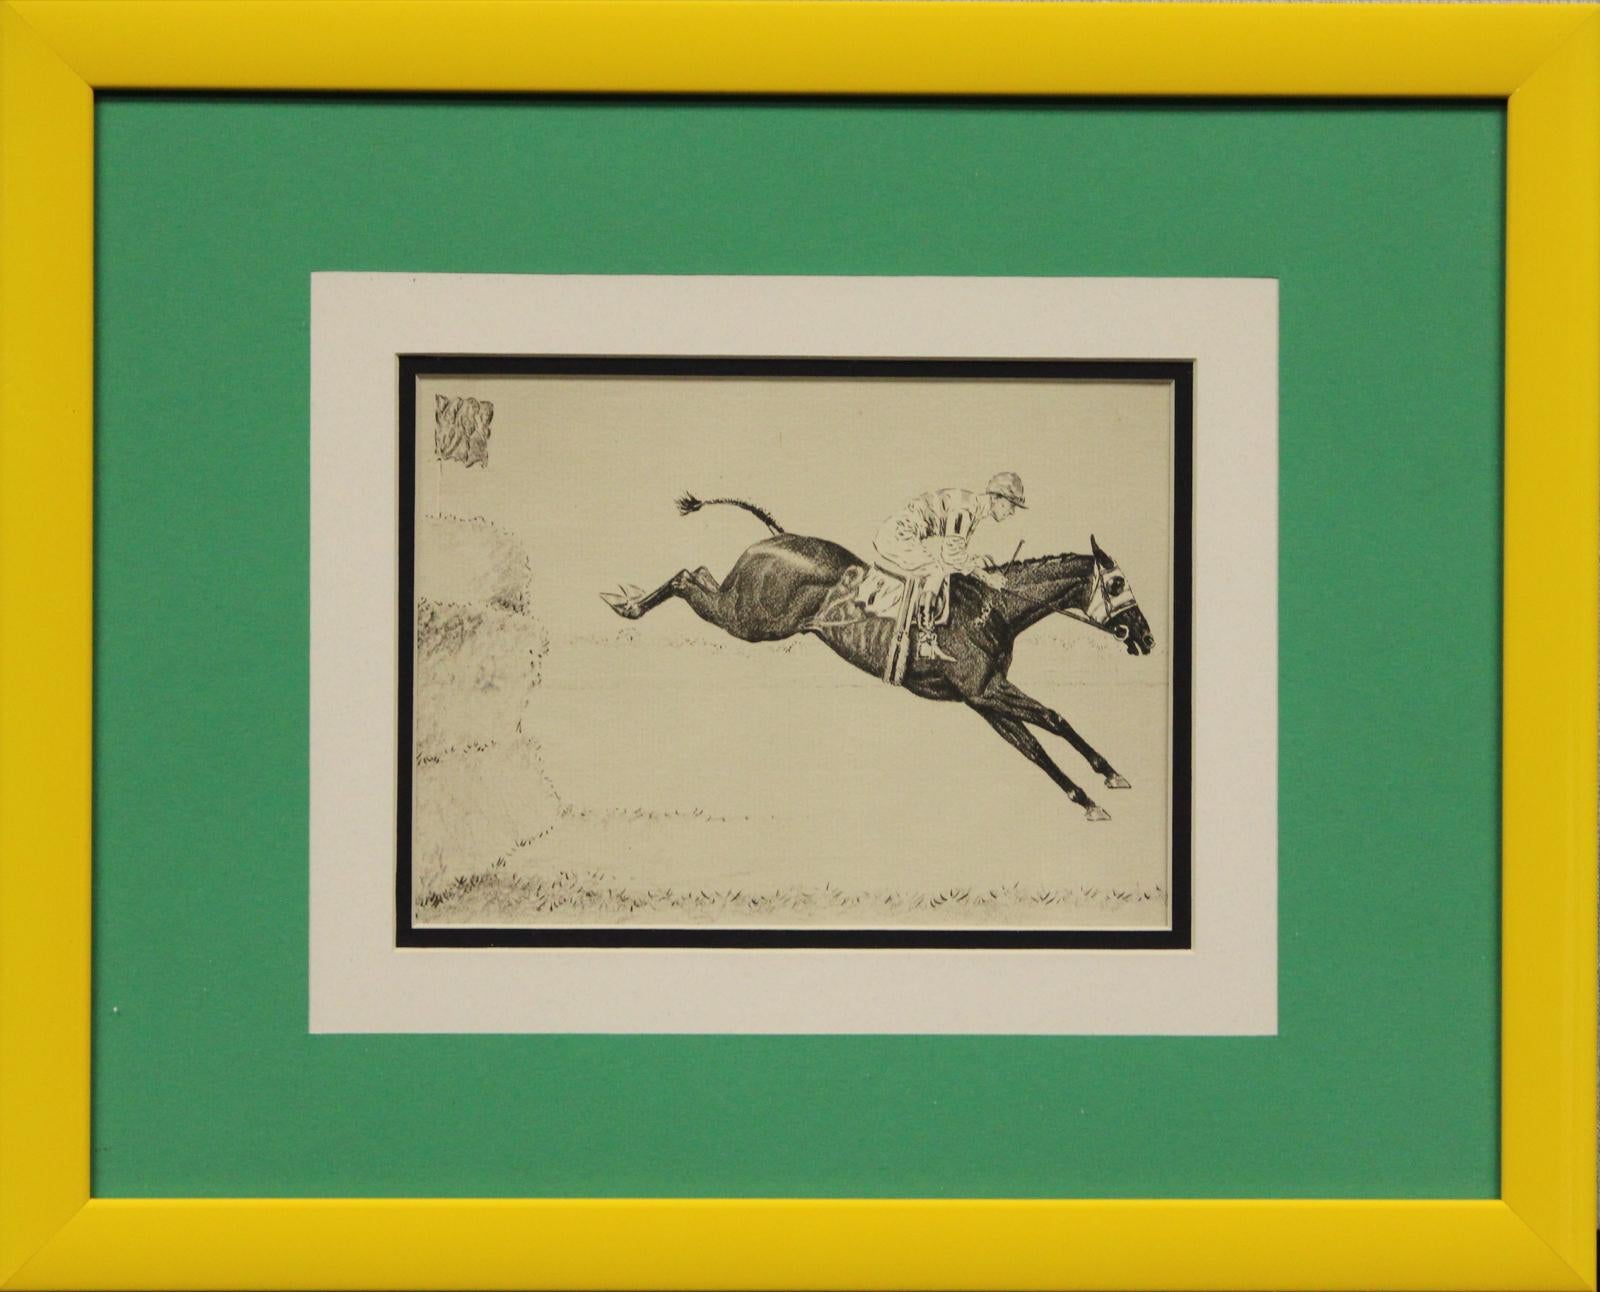 Klassische Kaltnadelradierung von Paul Desmond Brown (1893-1958) aus den 1930er Jahren, die einen Gentleman-Jockey an Bord des Hindernisläufers Nr. 1 bei der Beseitigung eines Zauns zeigt

Kunst Sz: 5 1/4 "H x 7 1/4 "W

Rahmengröße: 12 1/2 "H x 15